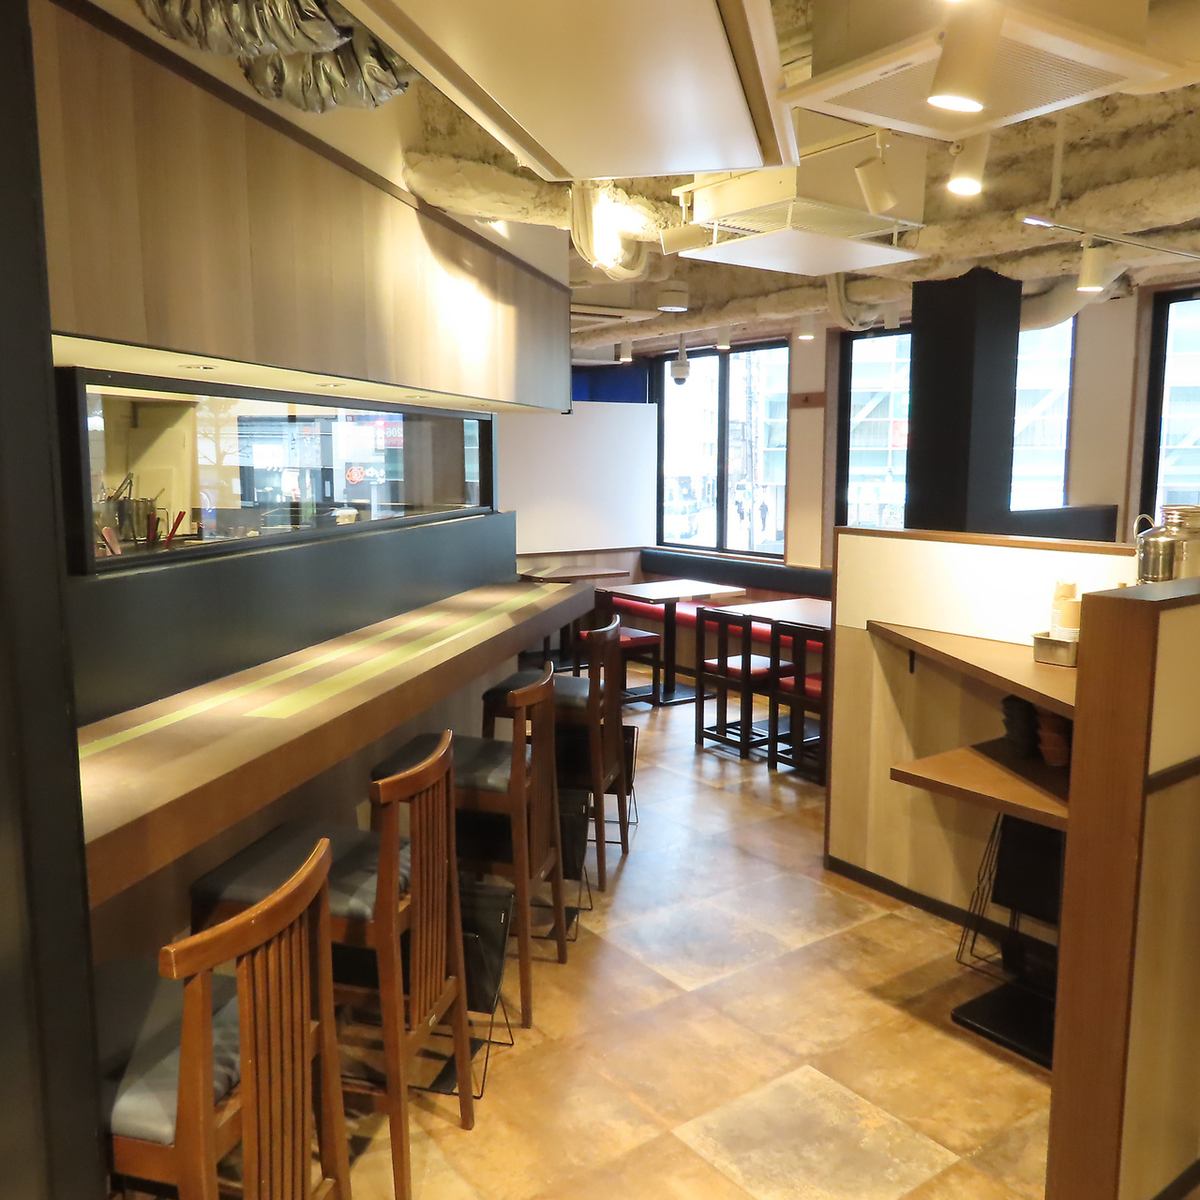 充滿現代日式風格的吧台席和餐桌席。